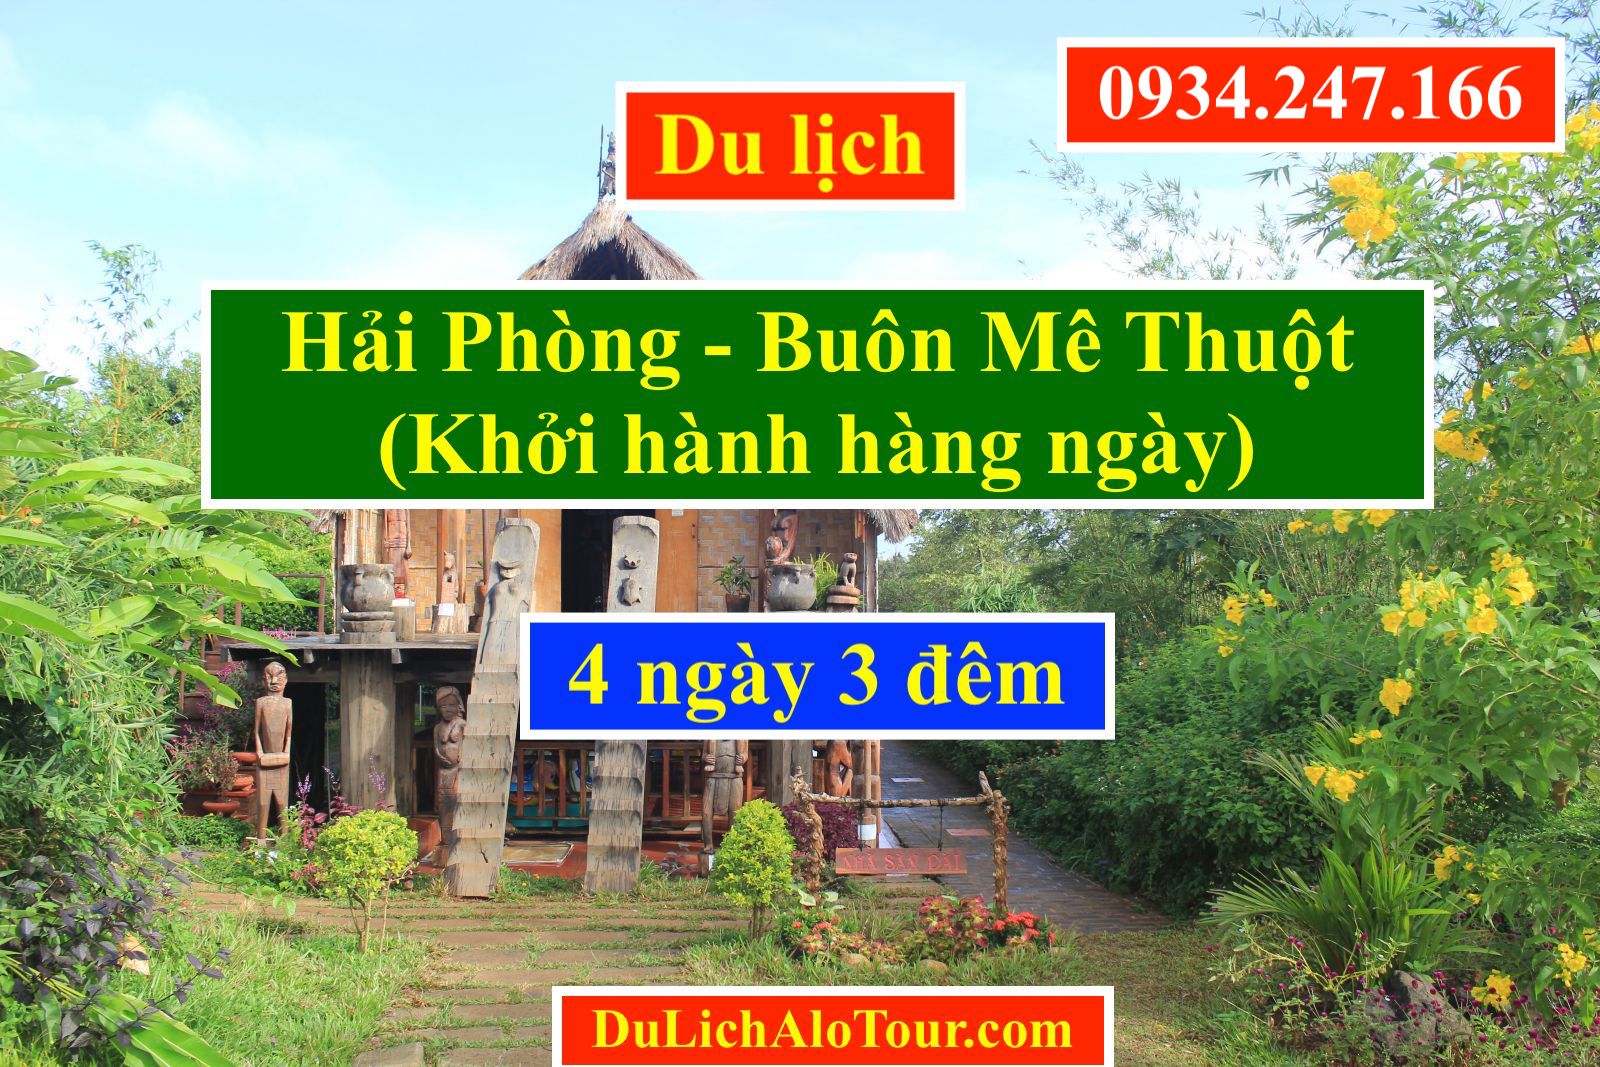 Tour du lịch Hải Phòng Buôn Ma Thuột 4N3Đ giá rẻ